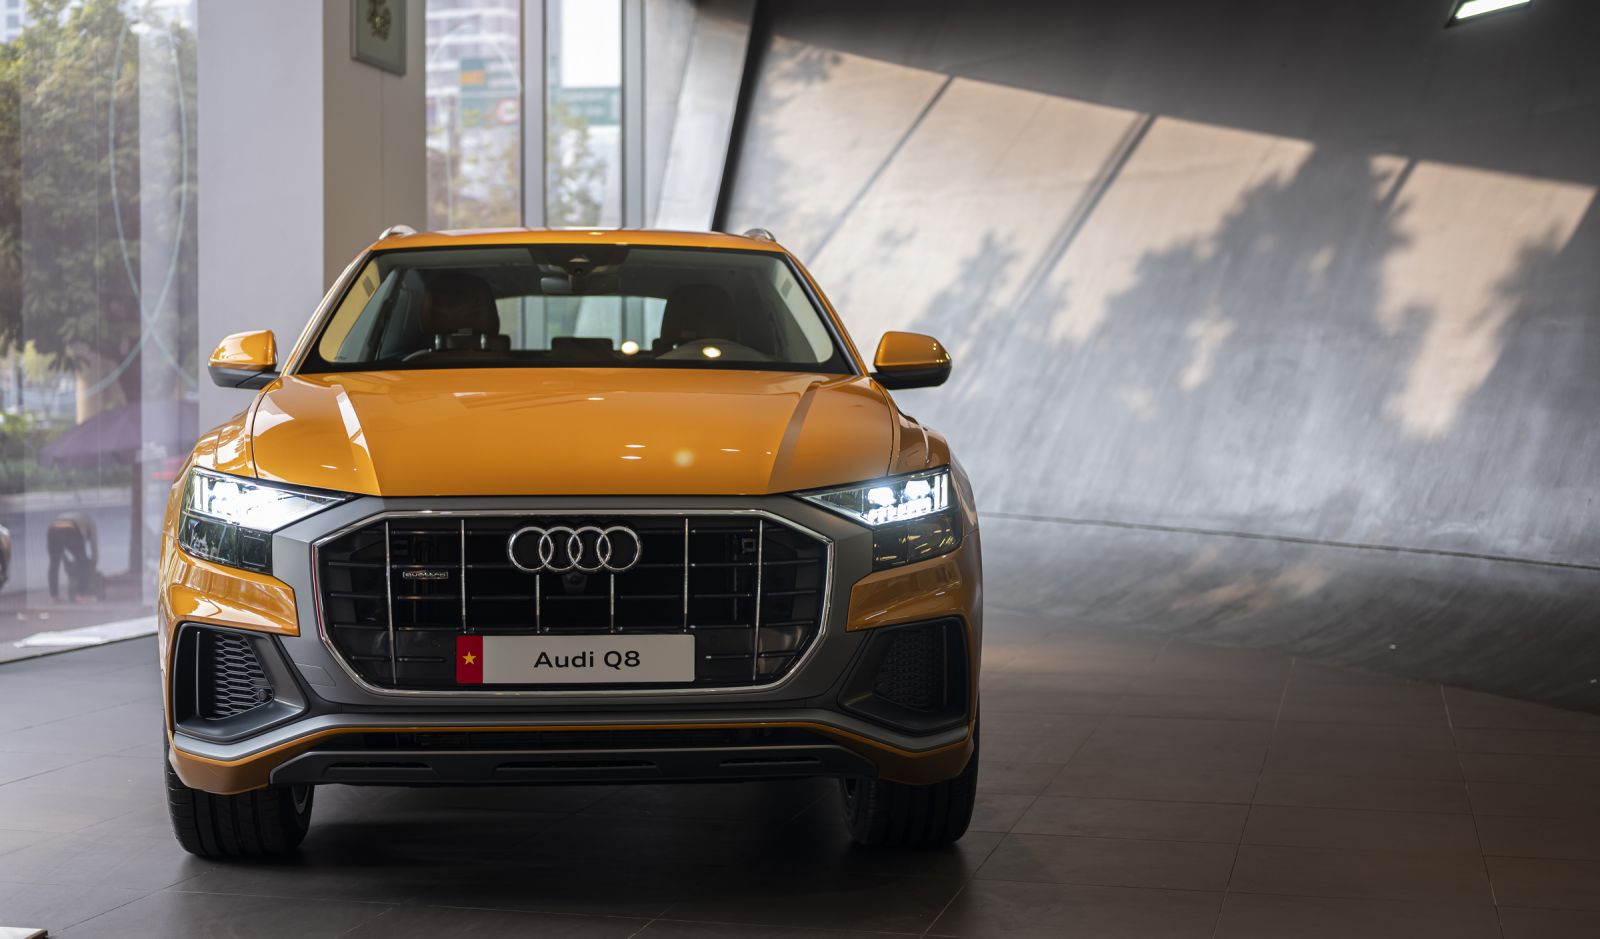 Tìm hiểu về xe Audi Toàn bộ những điều cần biết khi sở hữu chúng